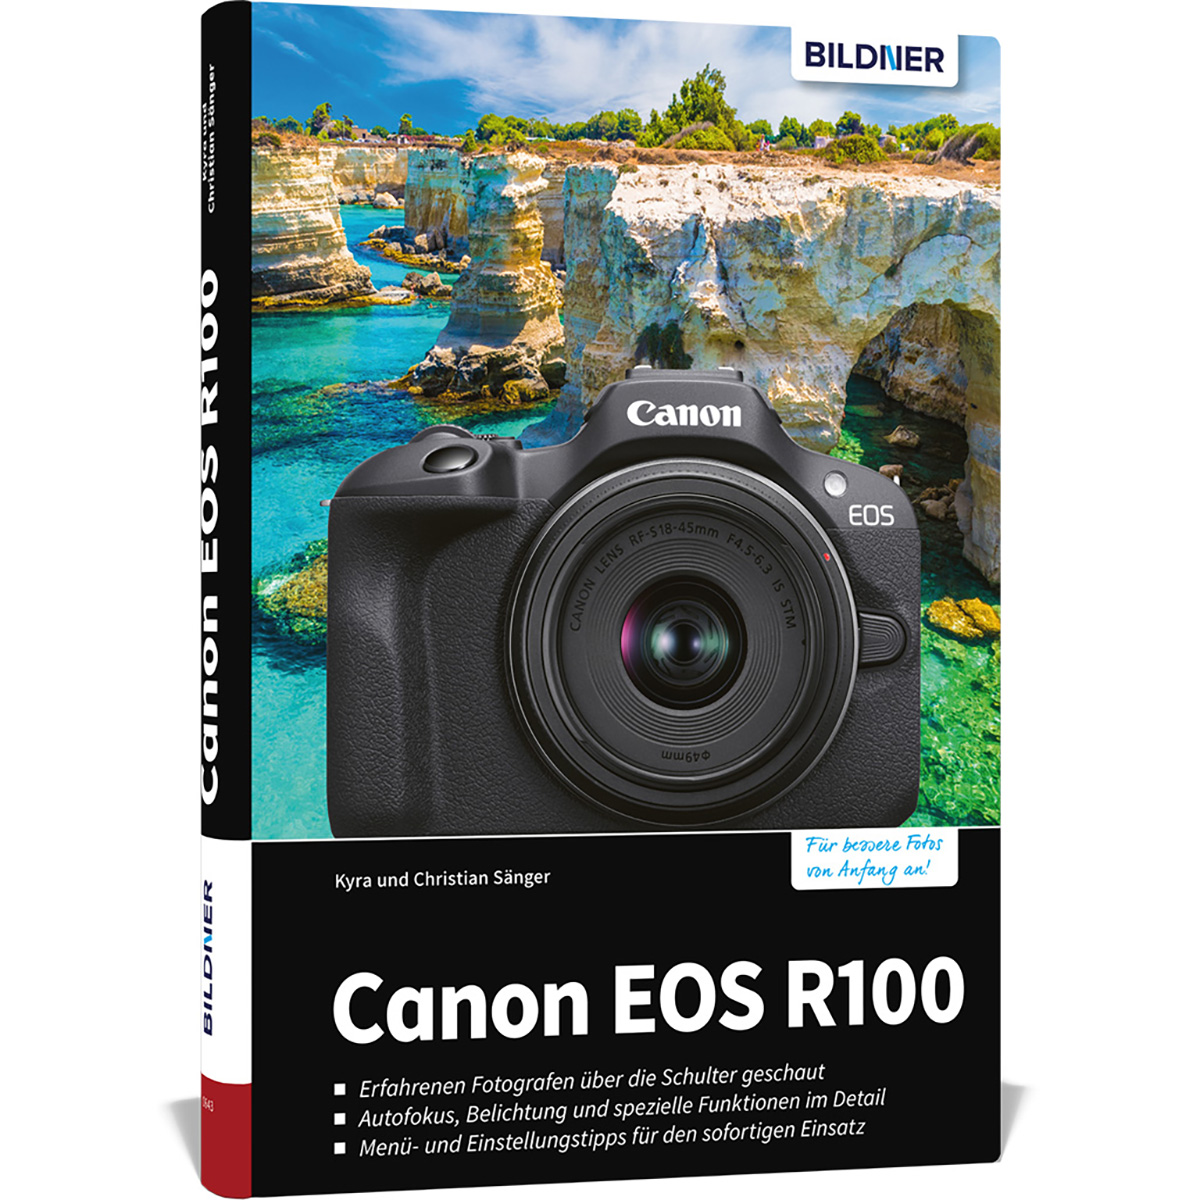 R100 EOS umfangreiche Kamera Ihrer Canon Praxisbuch - zu Das